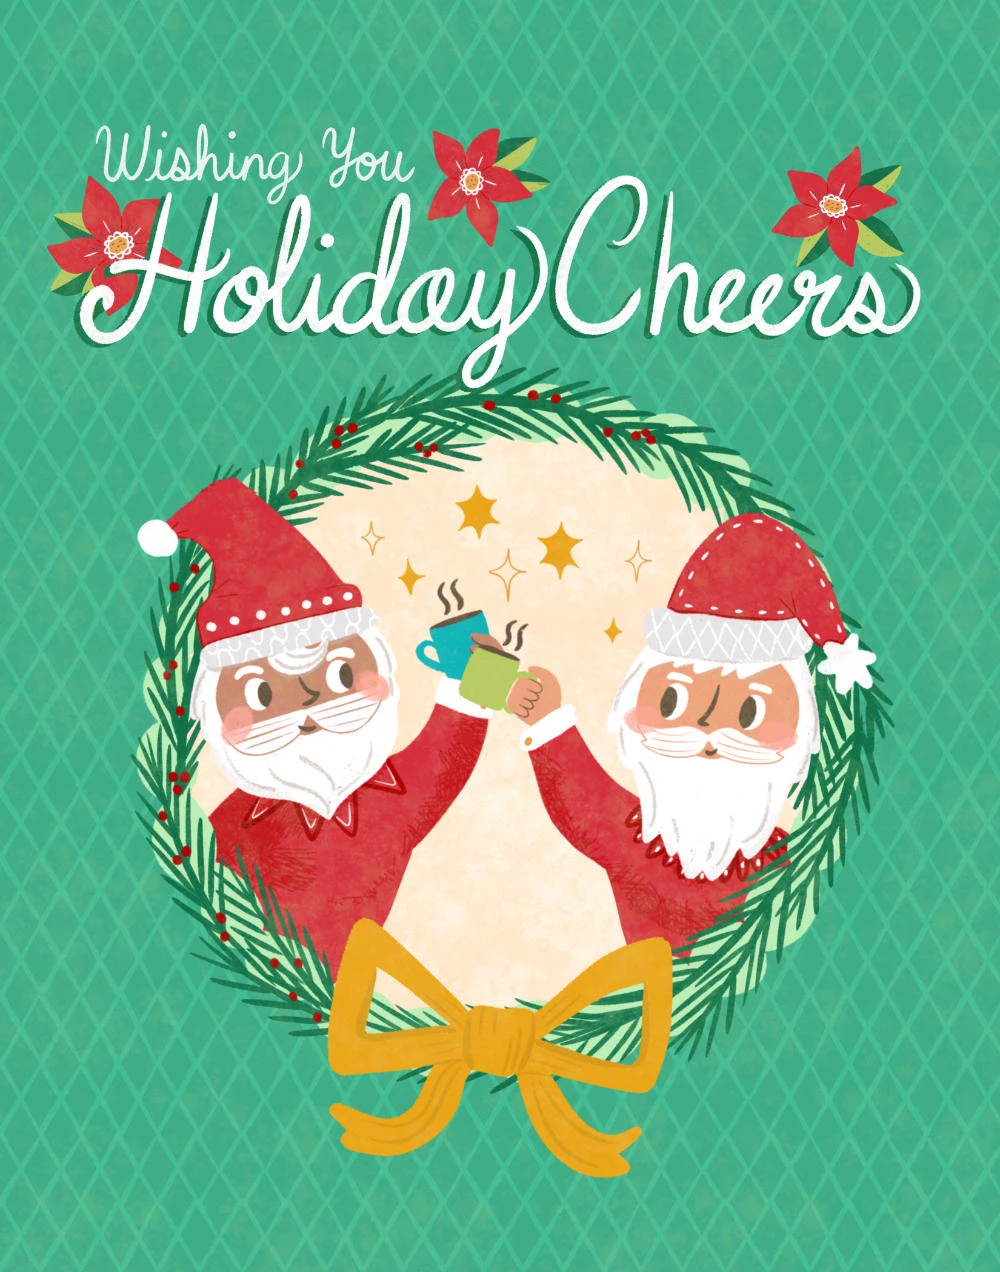 212-webchristmas-cheers-card-17043033082921.jpg